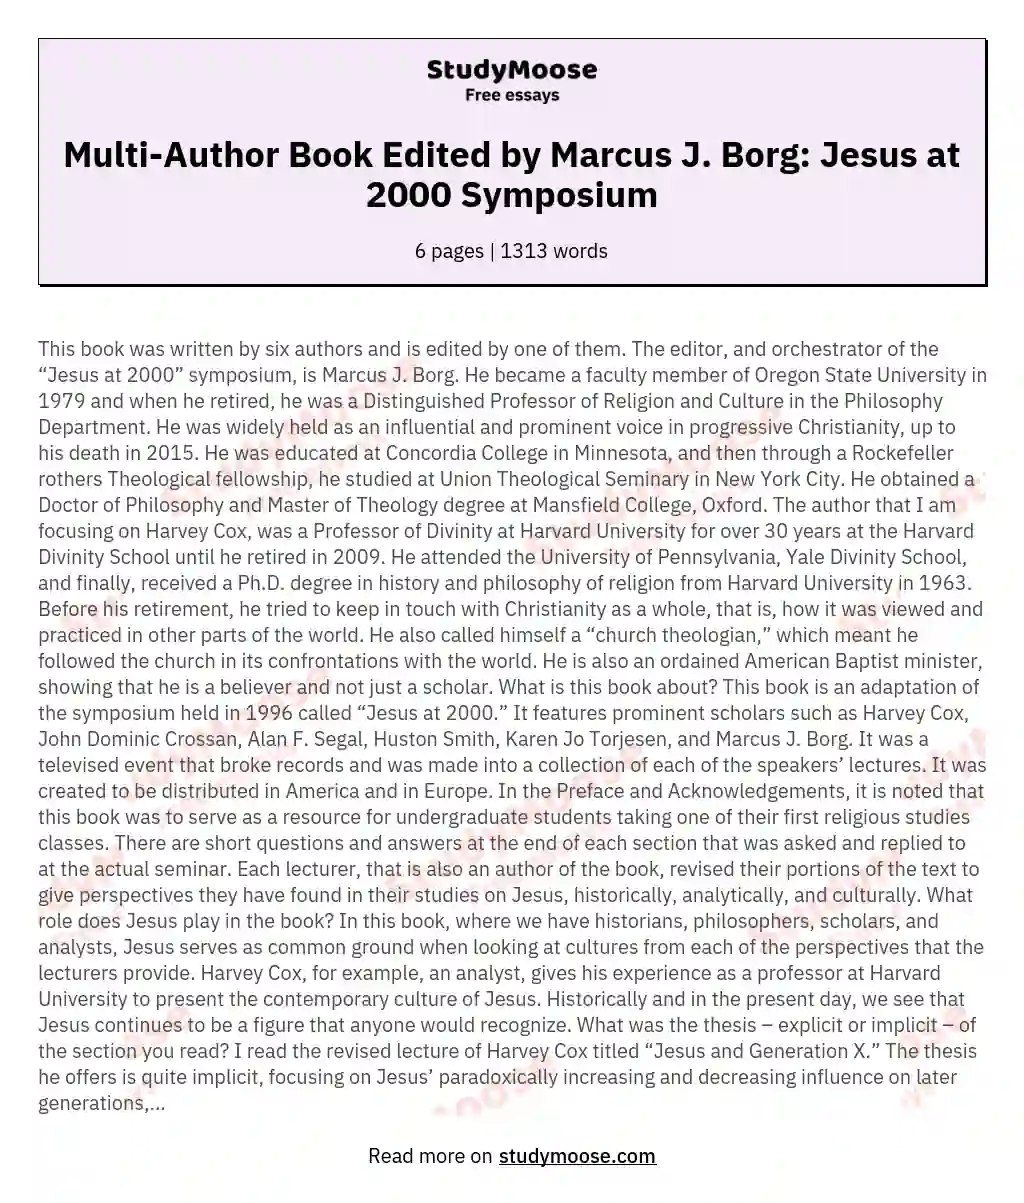 Multi-Author Book Edited by Marcus J. Borg: Jesus at 2000 Symposium essay